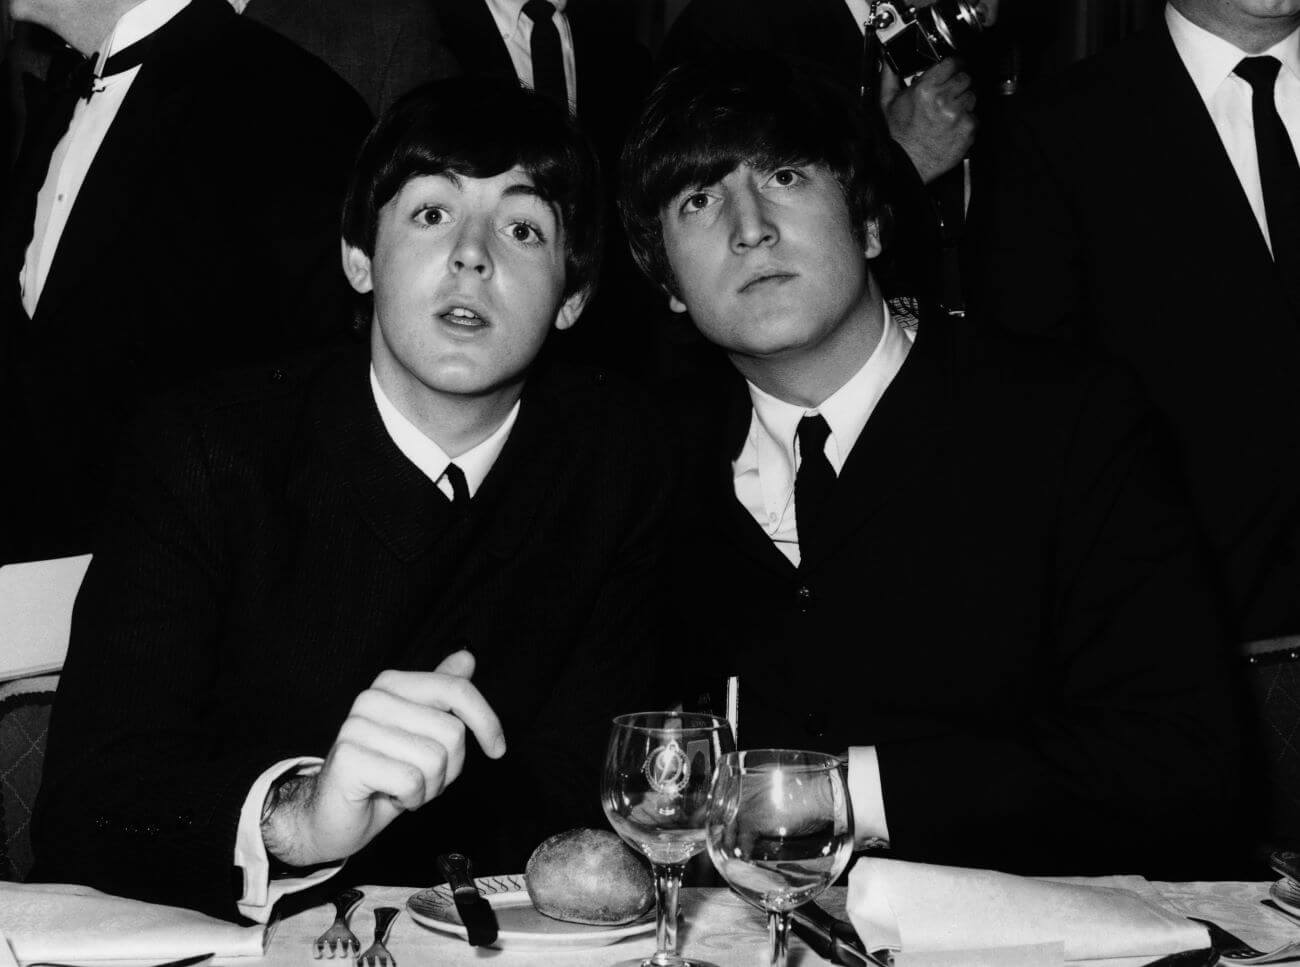 保罗·麦卡特尼说他和约翰·列侬“从未深入到对方的灵魂深处”